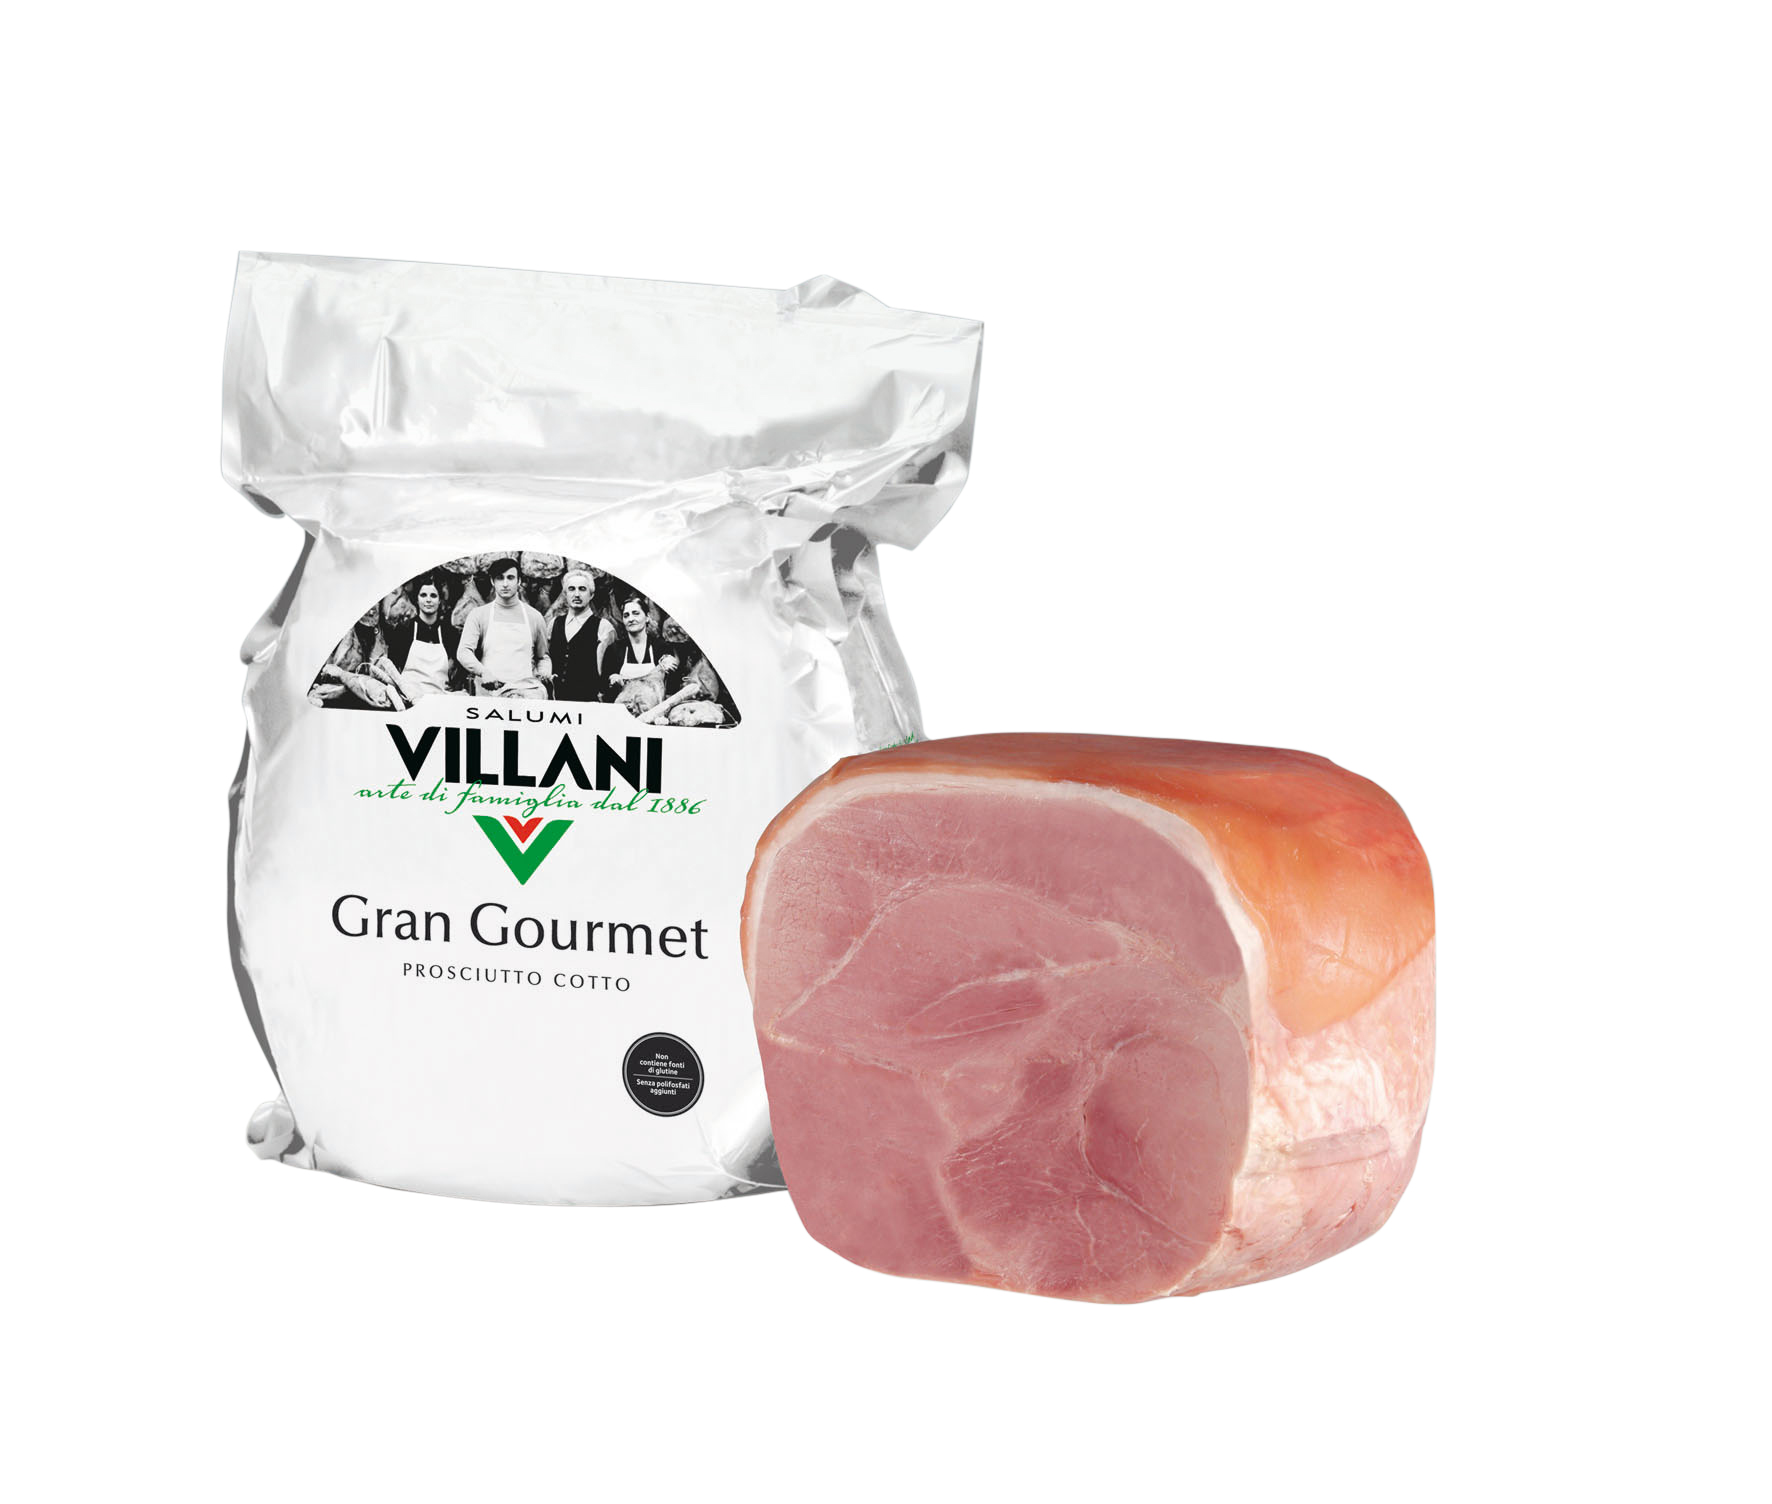 Villani Grand Gourmet Ham (150g)